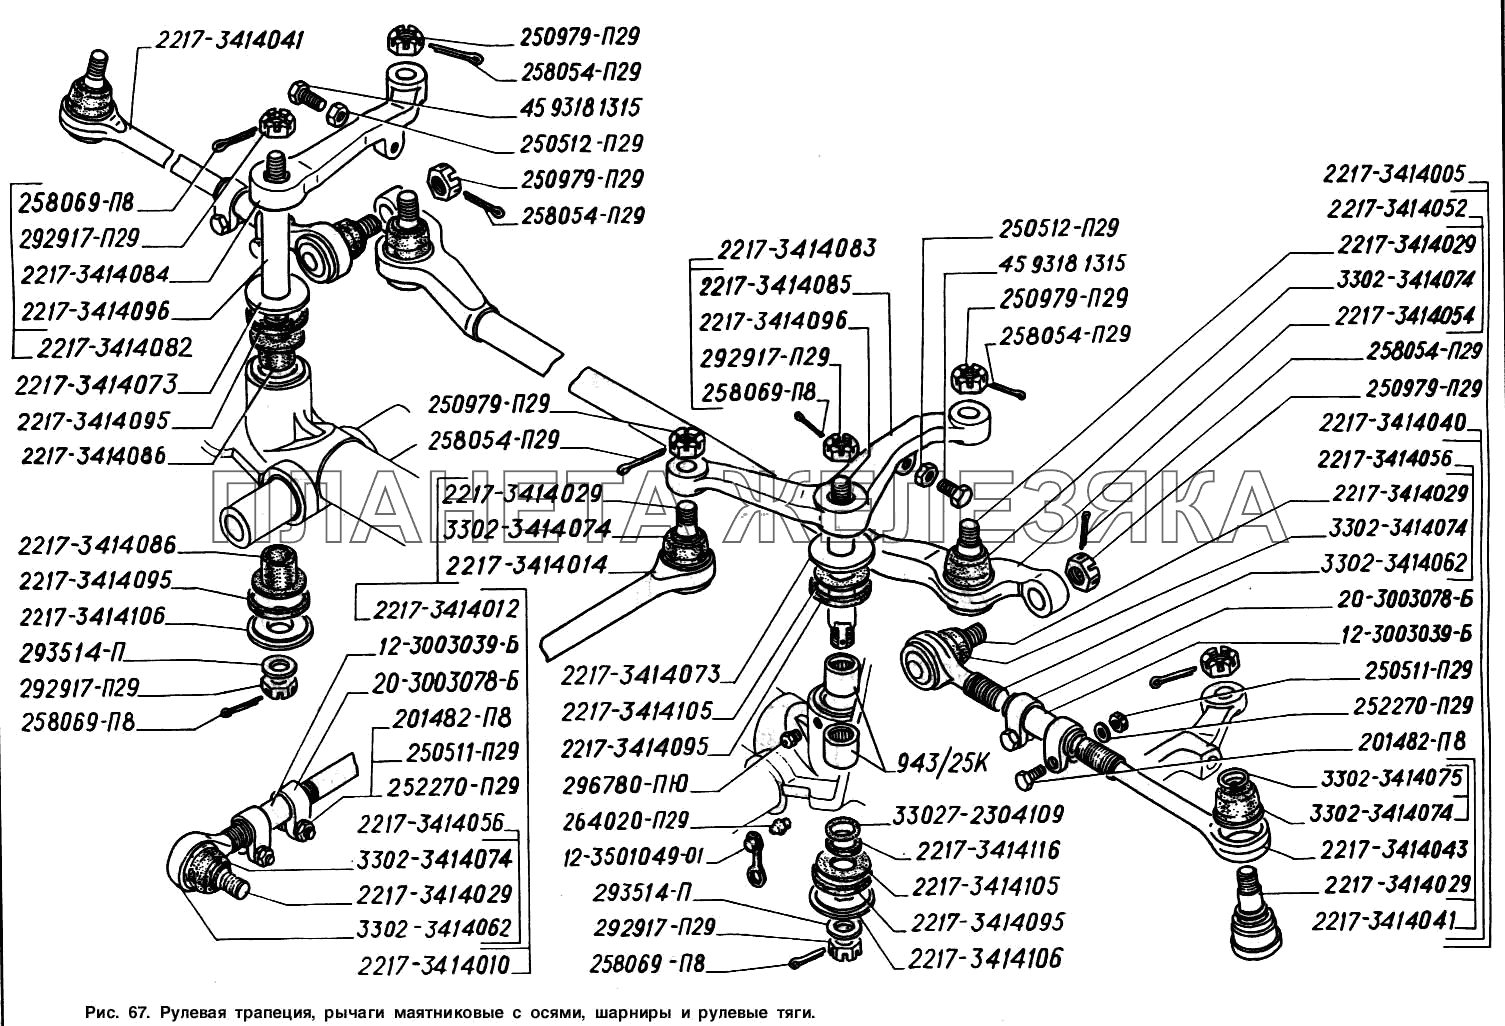 Рулевая трапеция, рычаги маятниковые с осями, шарниры и рулевые тяги ГАЗ-2217 (Соболь)